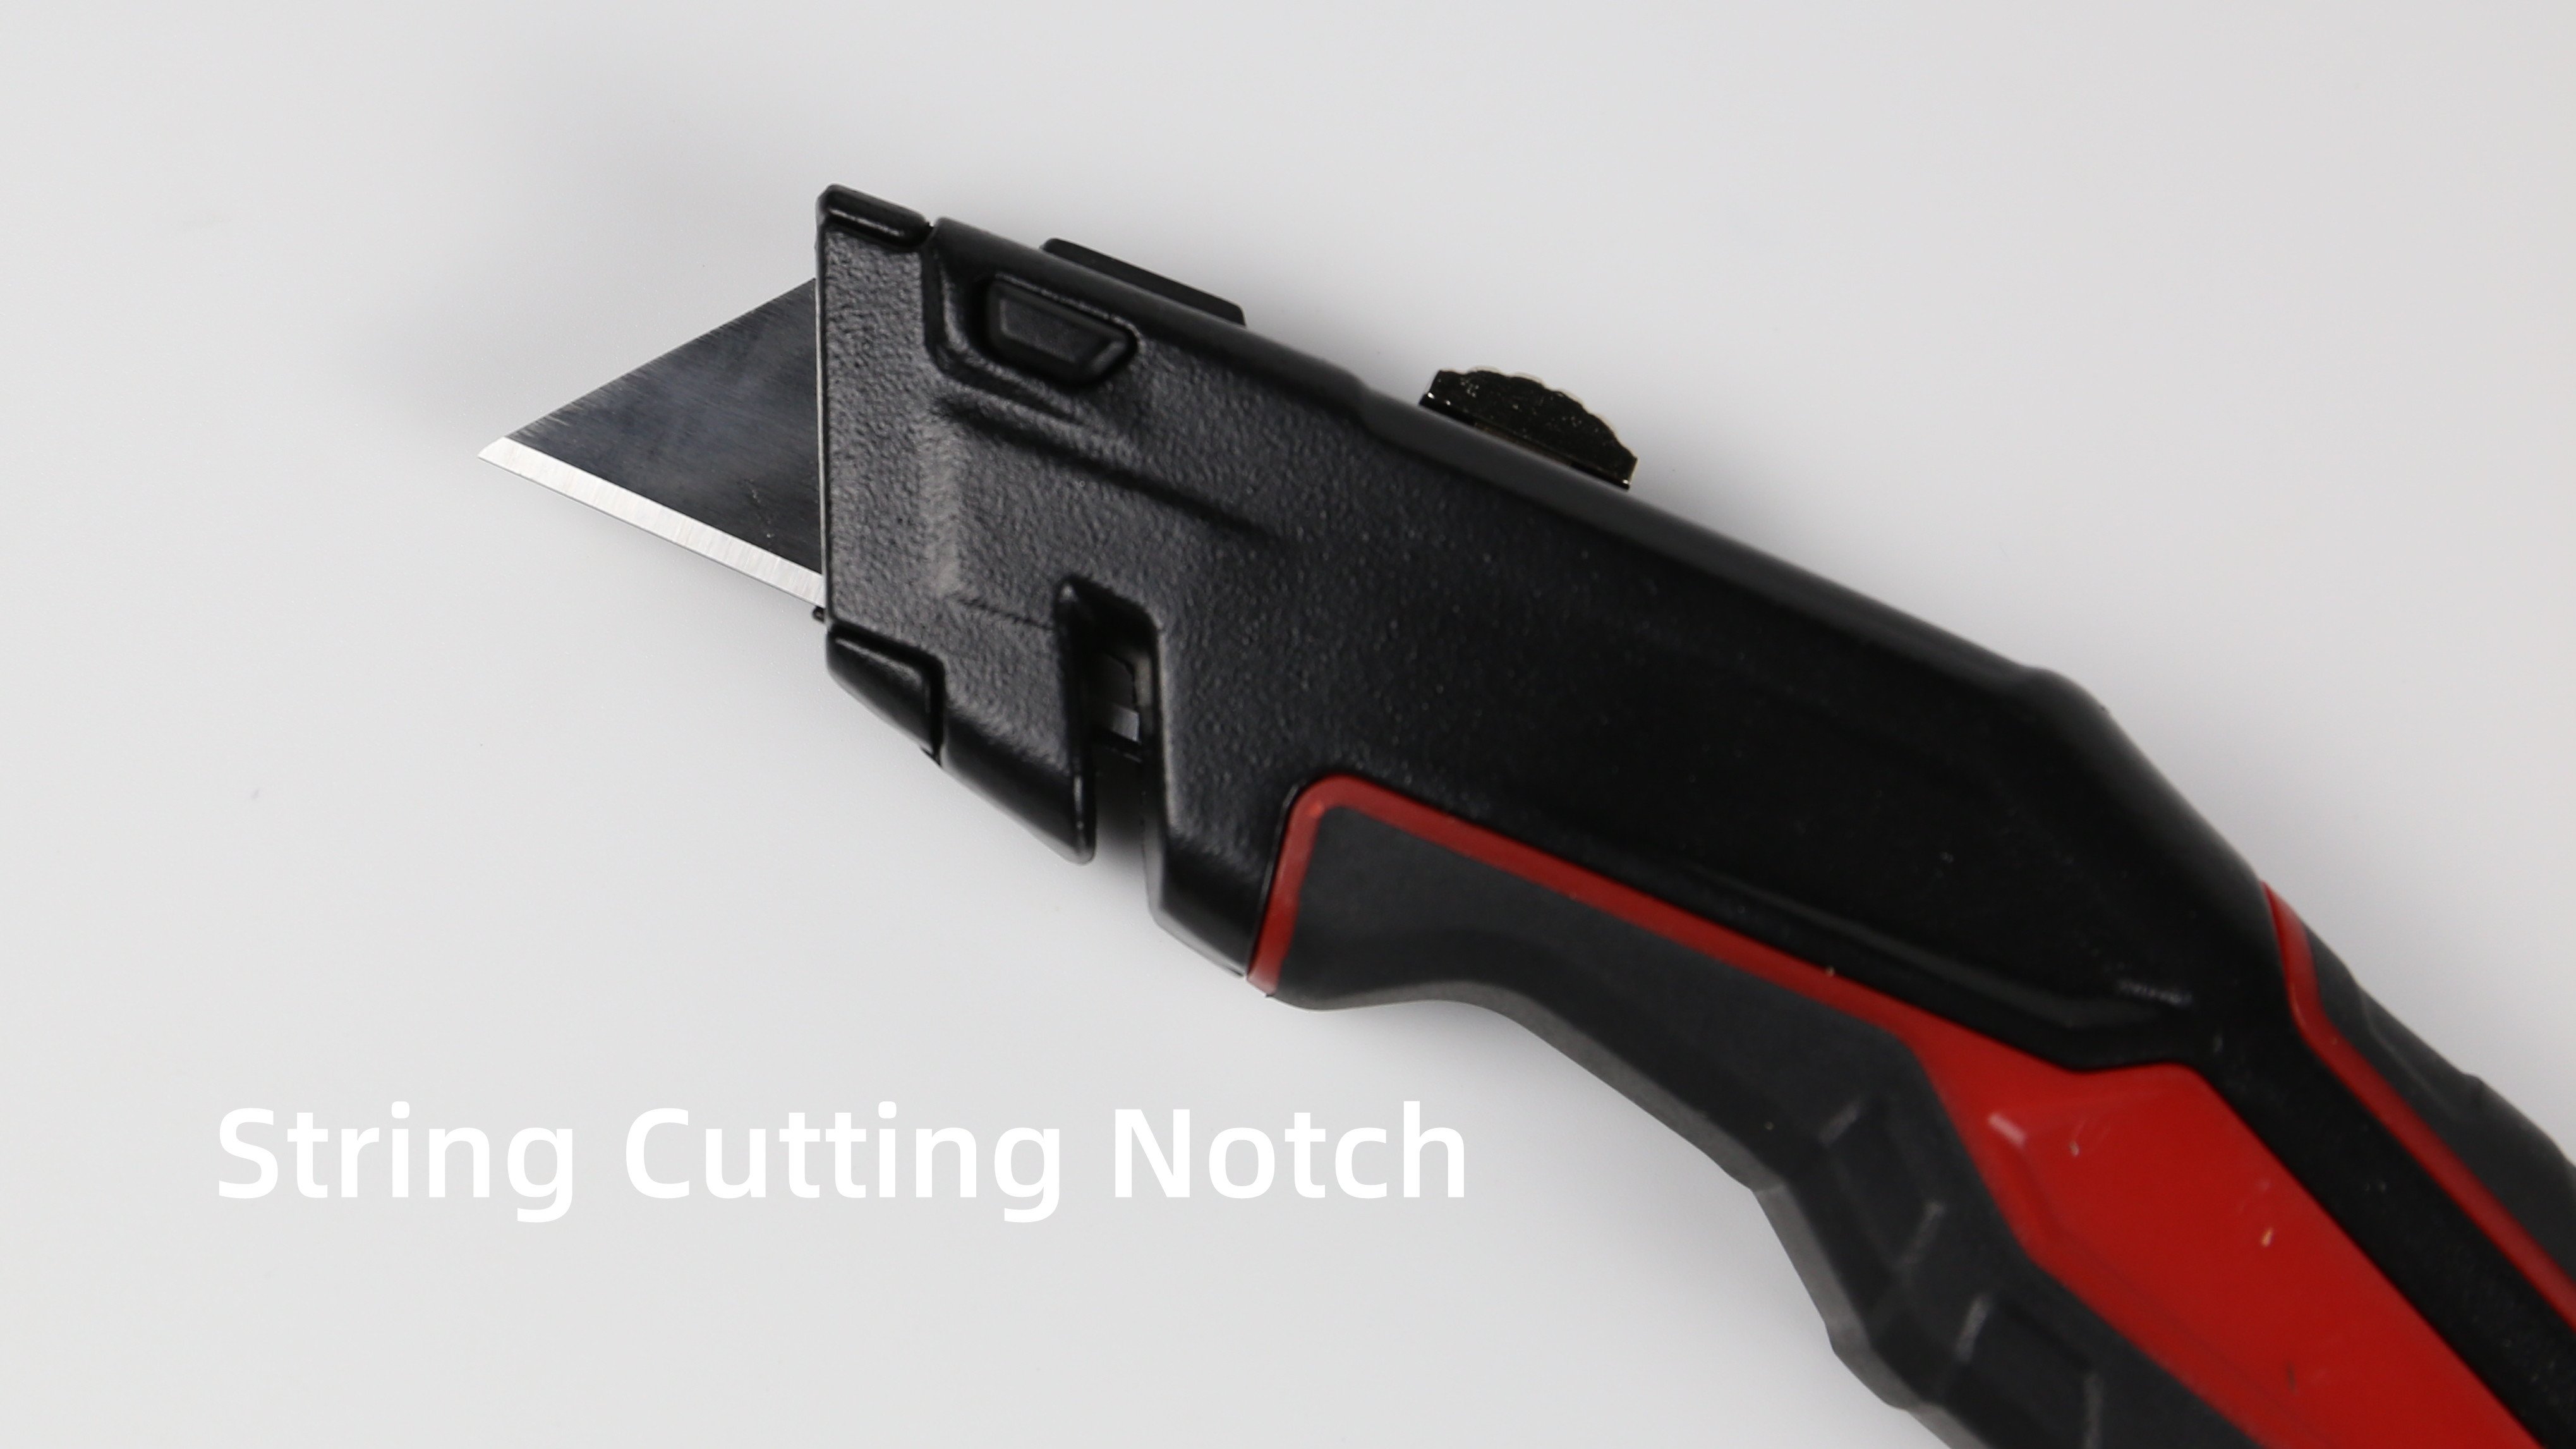 utility knife has String Cutting Notch